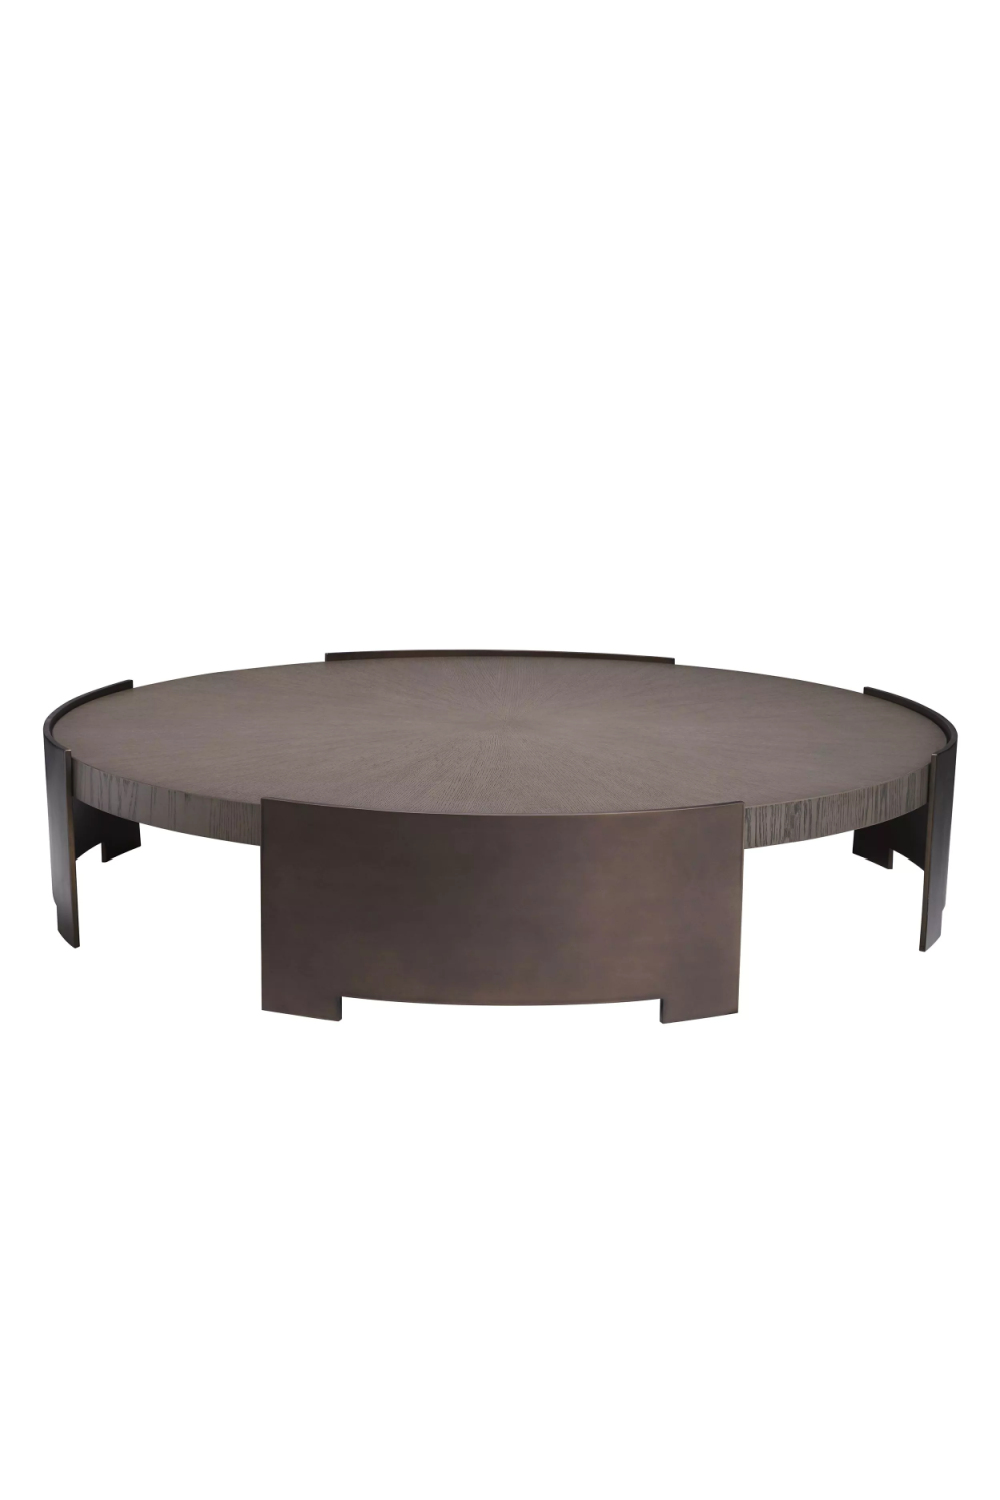 Contemporary Bronze Coffee Table | Eichholtz Quinto | Oroa.com